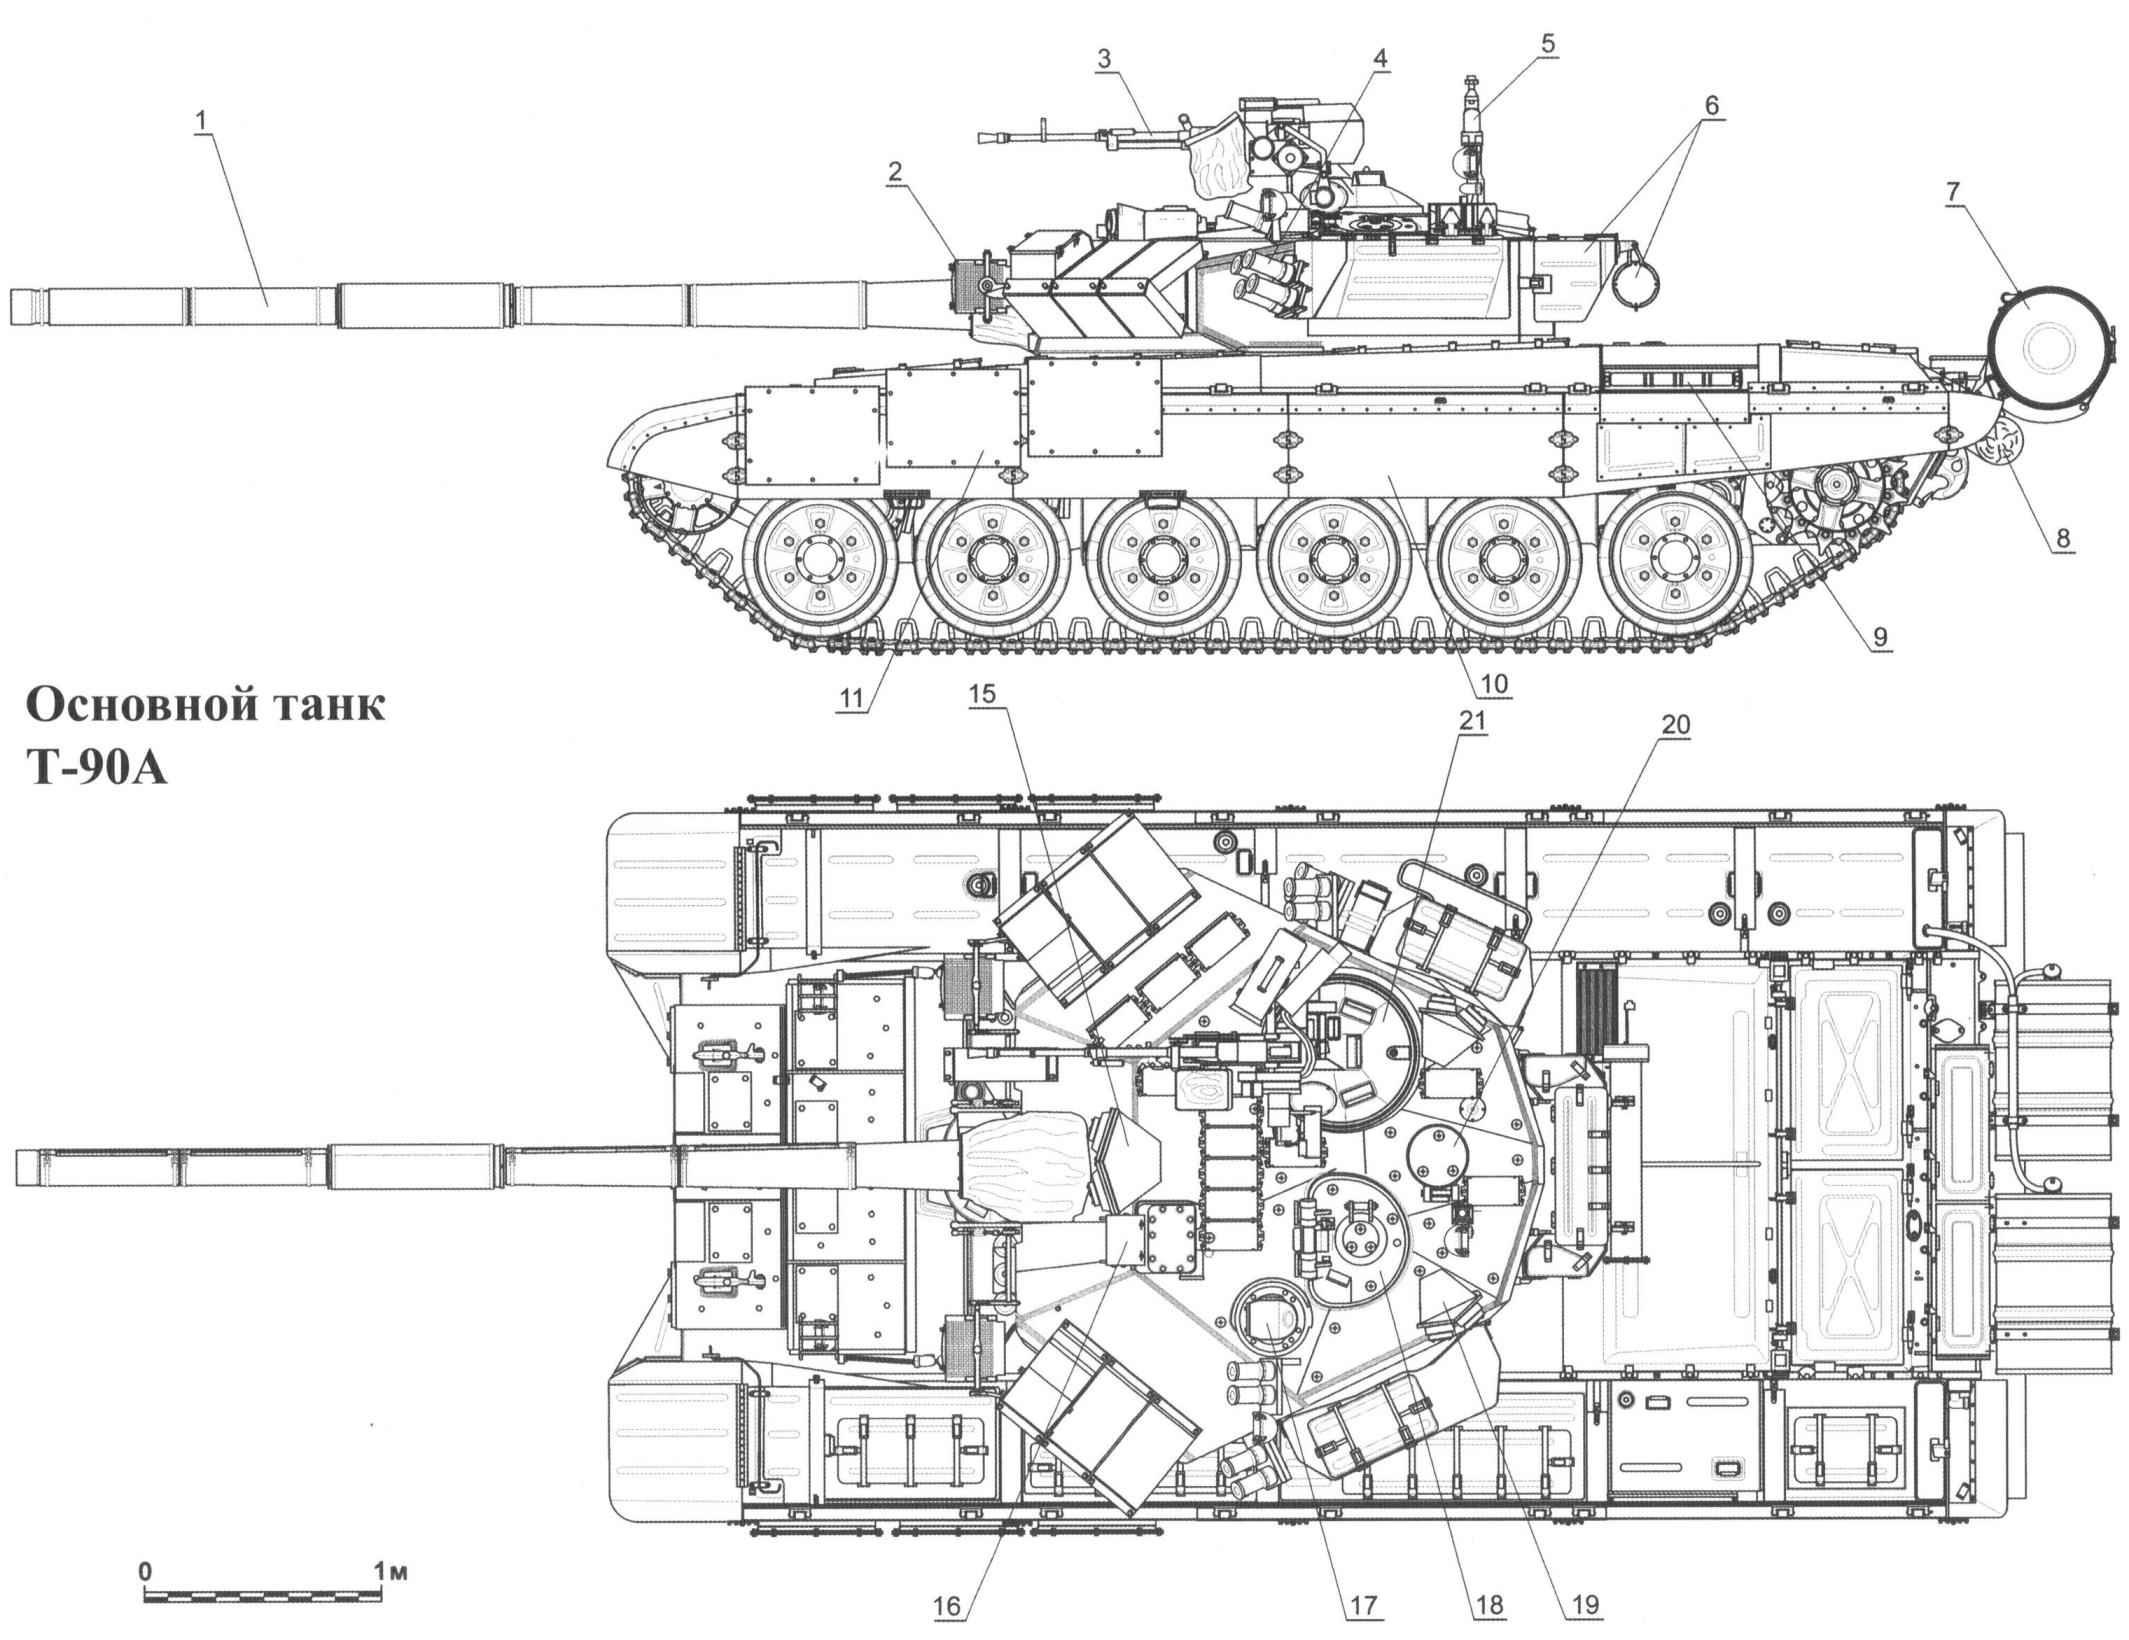 Основной танк Т-90А